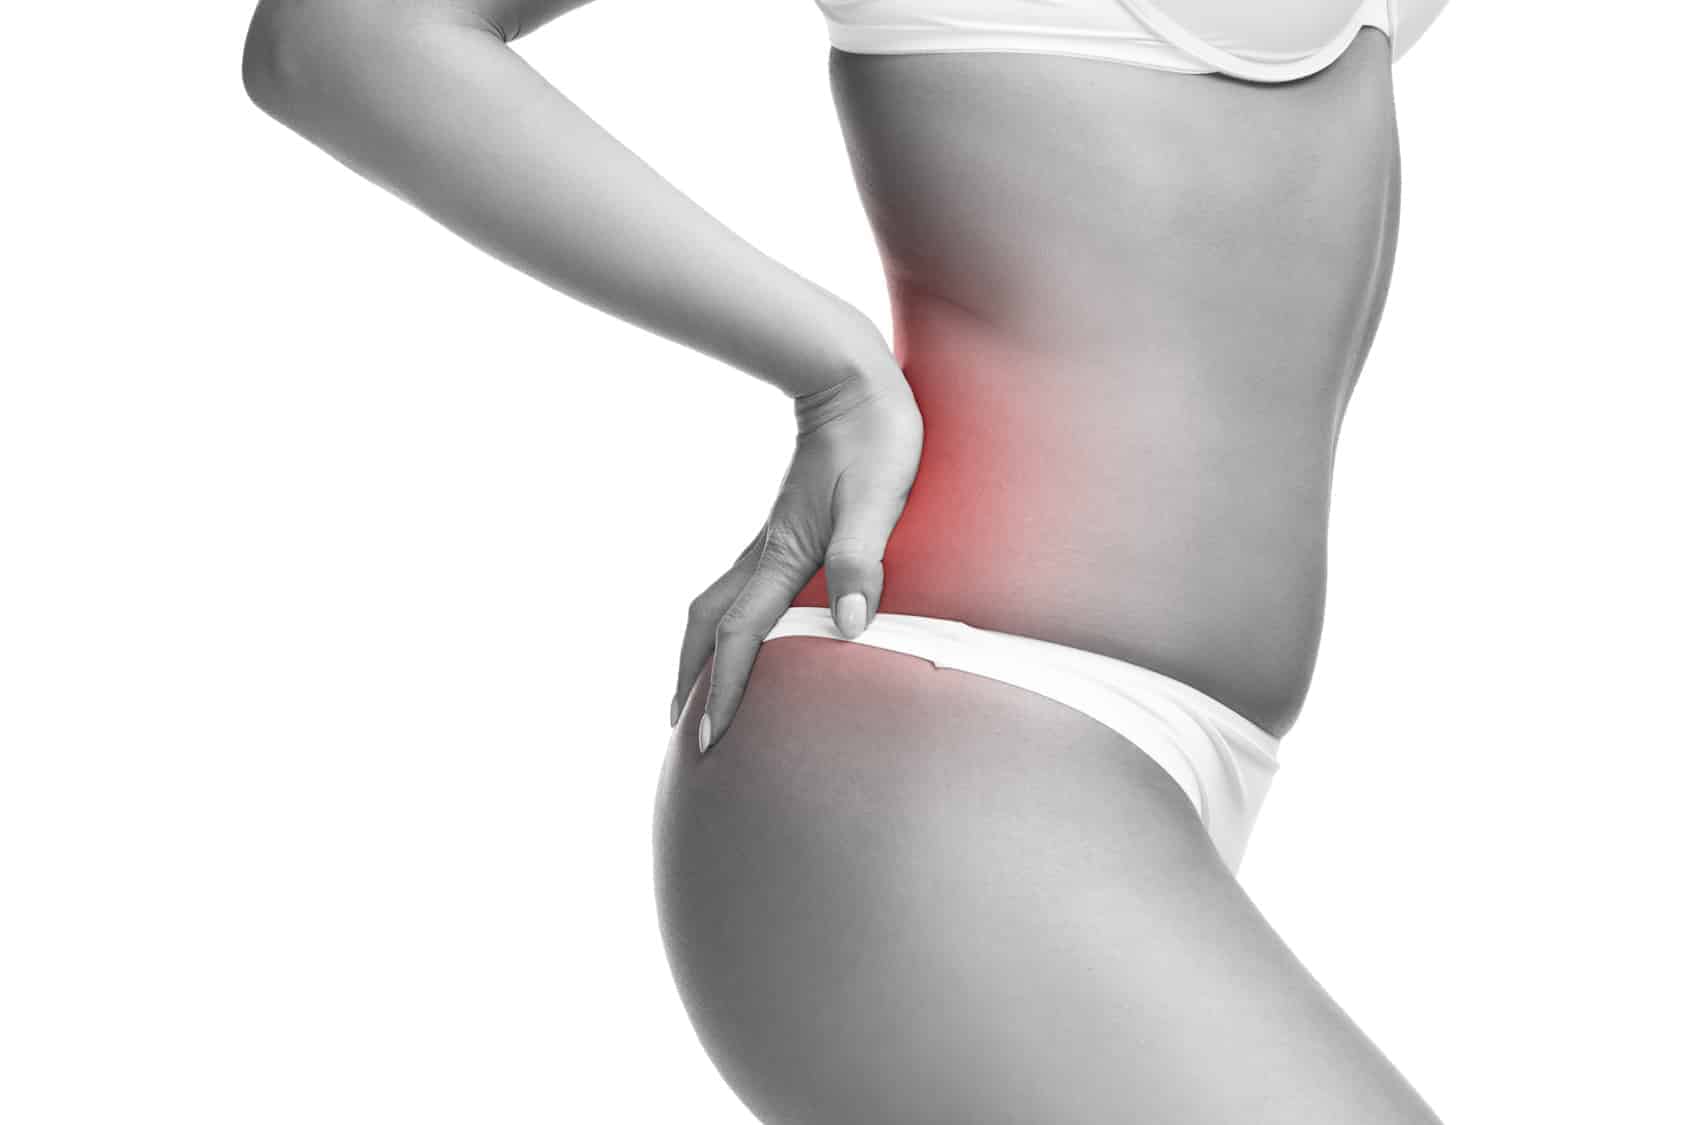 sciatica stretches back pain